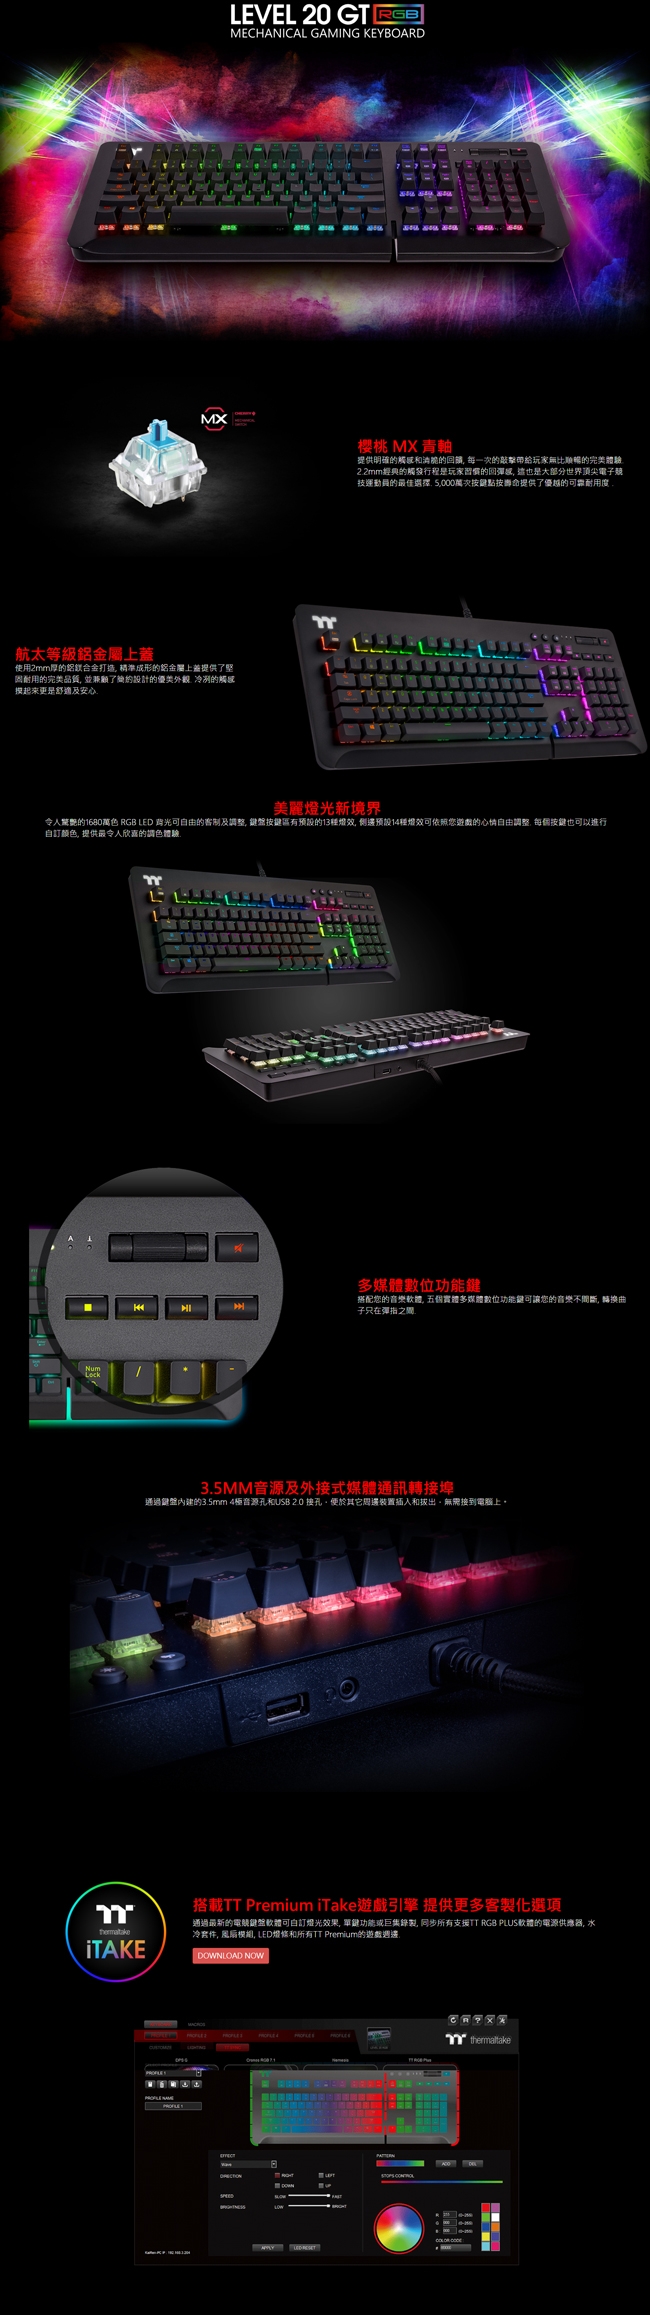 曜越 Level 20 RGB Cherry MX 機械式青軸電競鍵盤